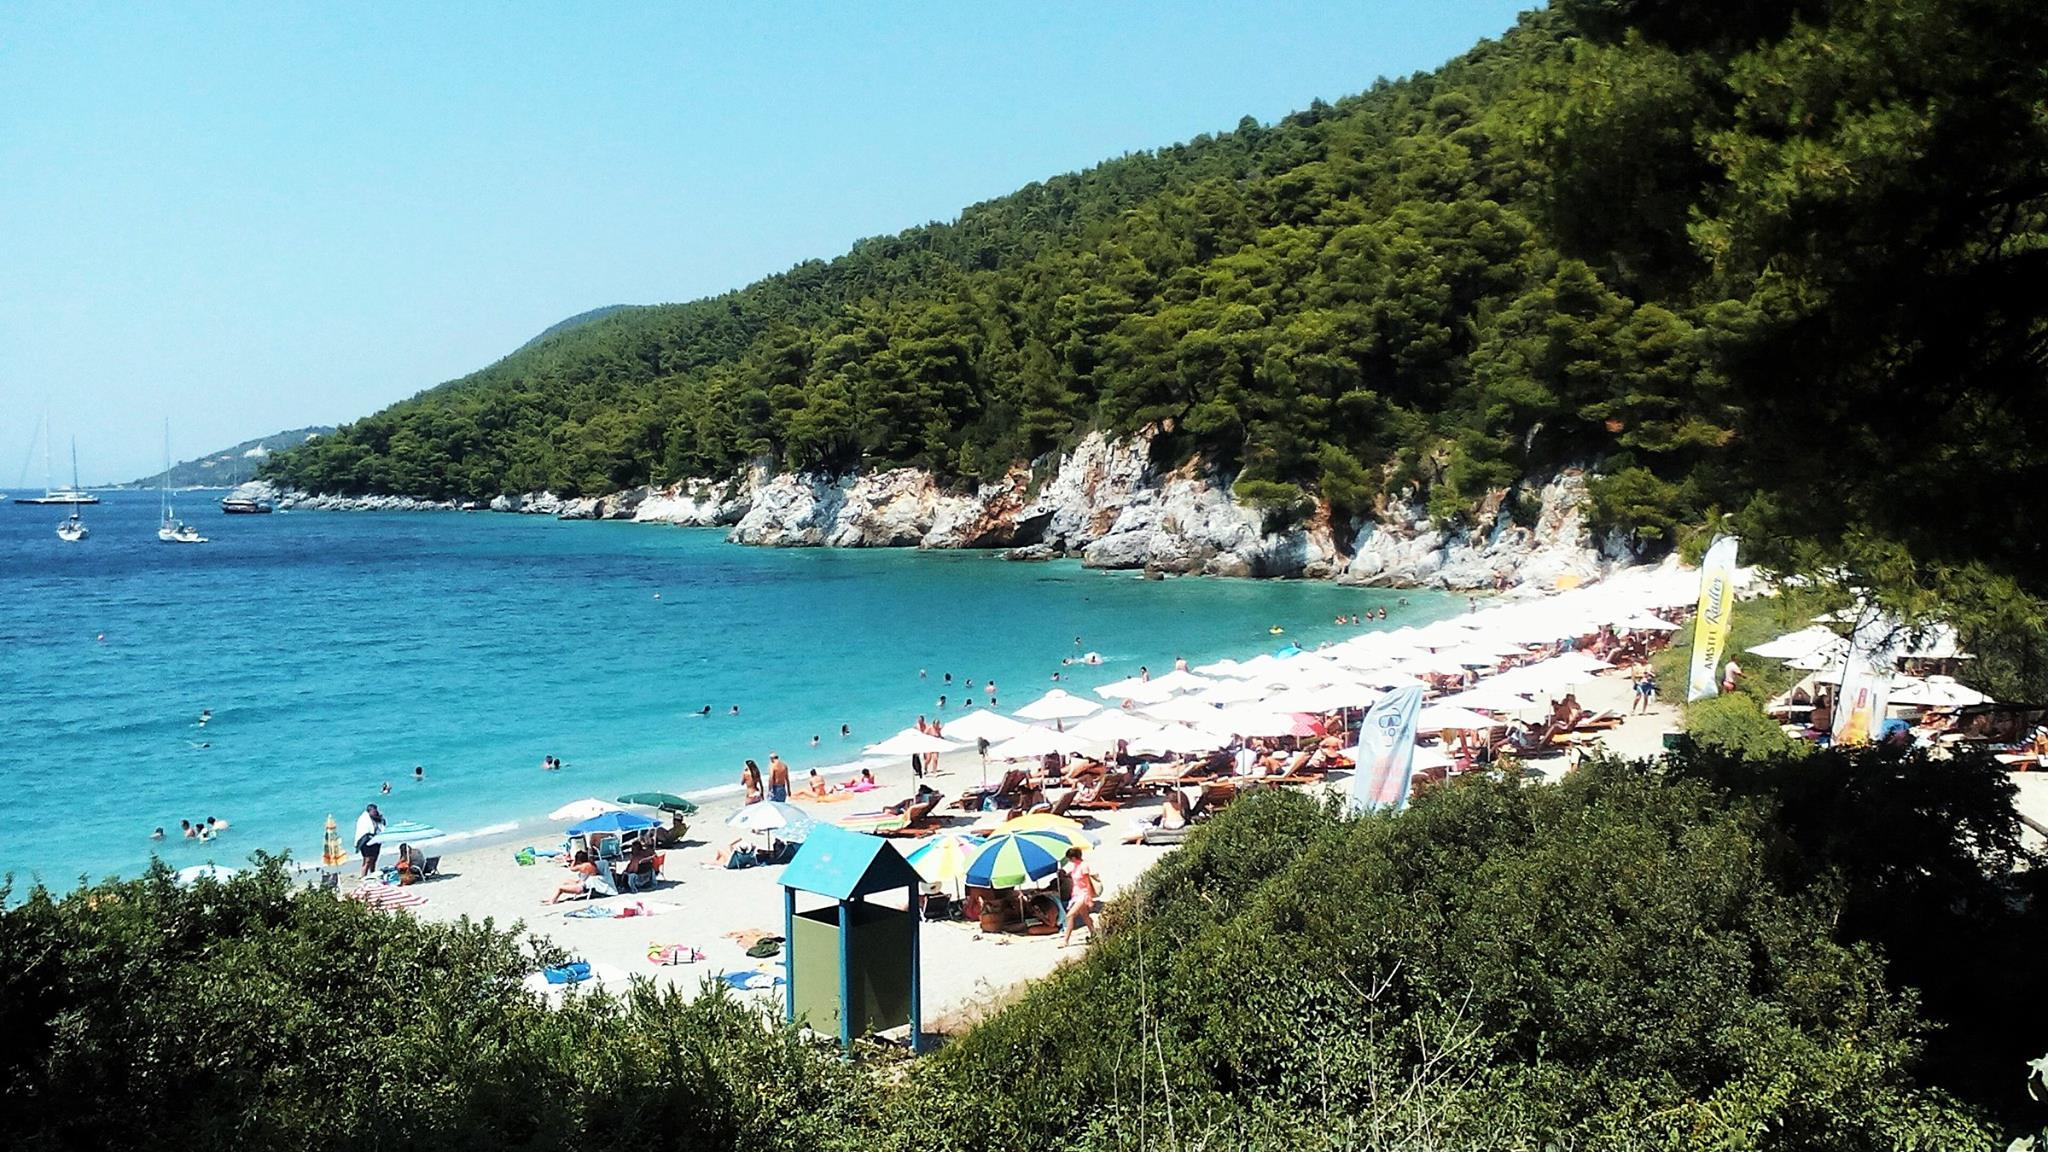 Παραλία Καστάνη στη Σκόπελο, ομπρέλες και πεύκα που φτάνουν ως την αμμουδιά και προσφέρουν φυσική σκιά